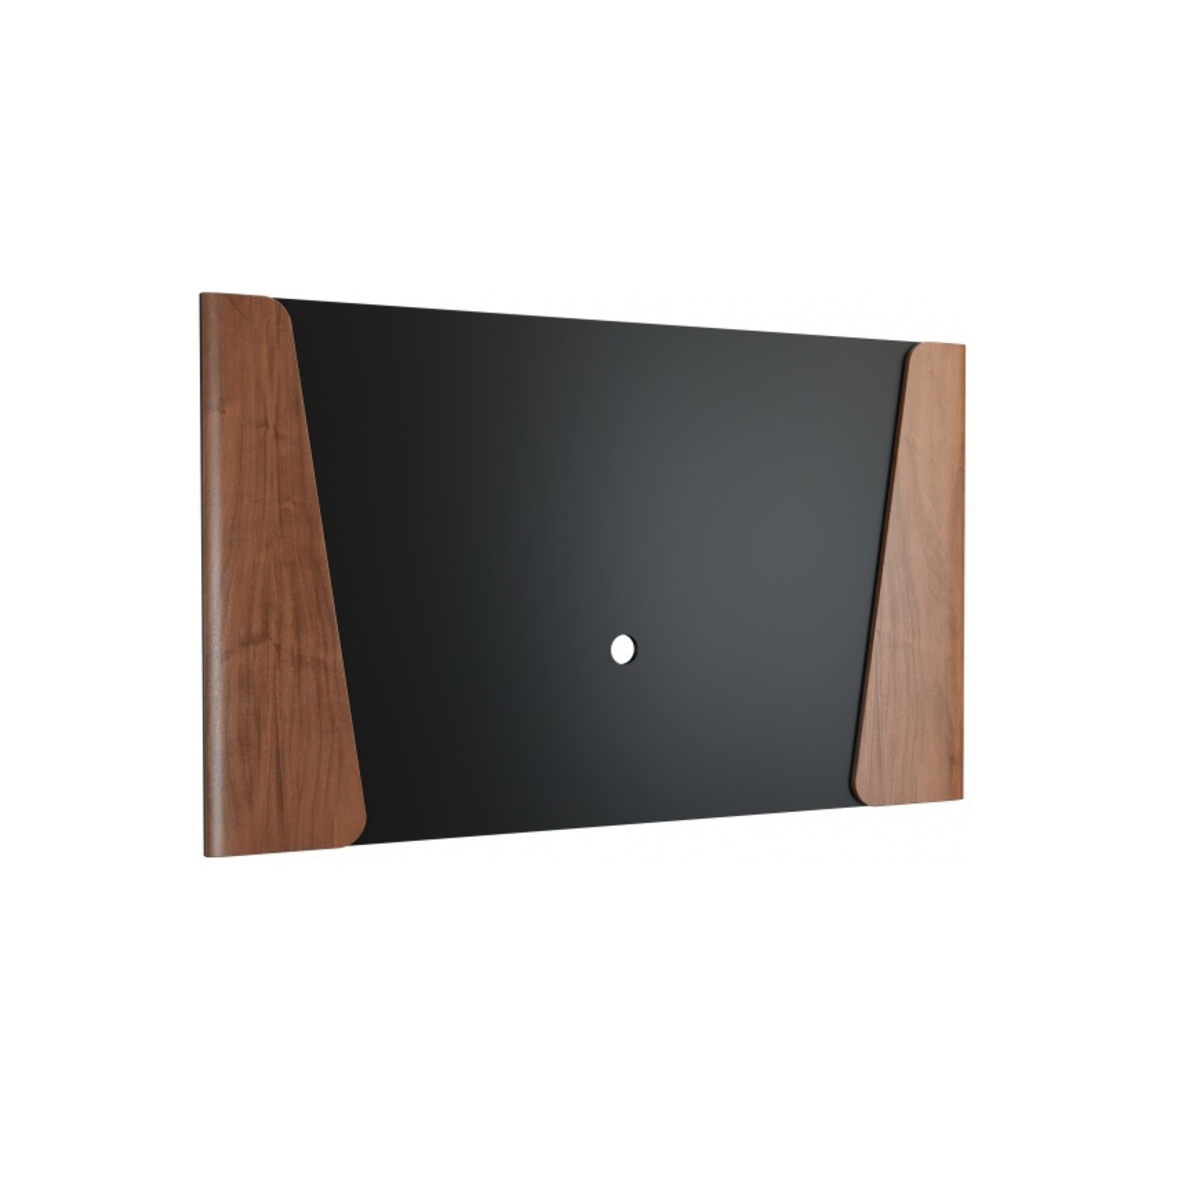 Панель настенная для ТВ Mebin Santorini, maxi, размер 166х4х100, цвет: американский орех (Panel TV maxi)Panel TV maxi